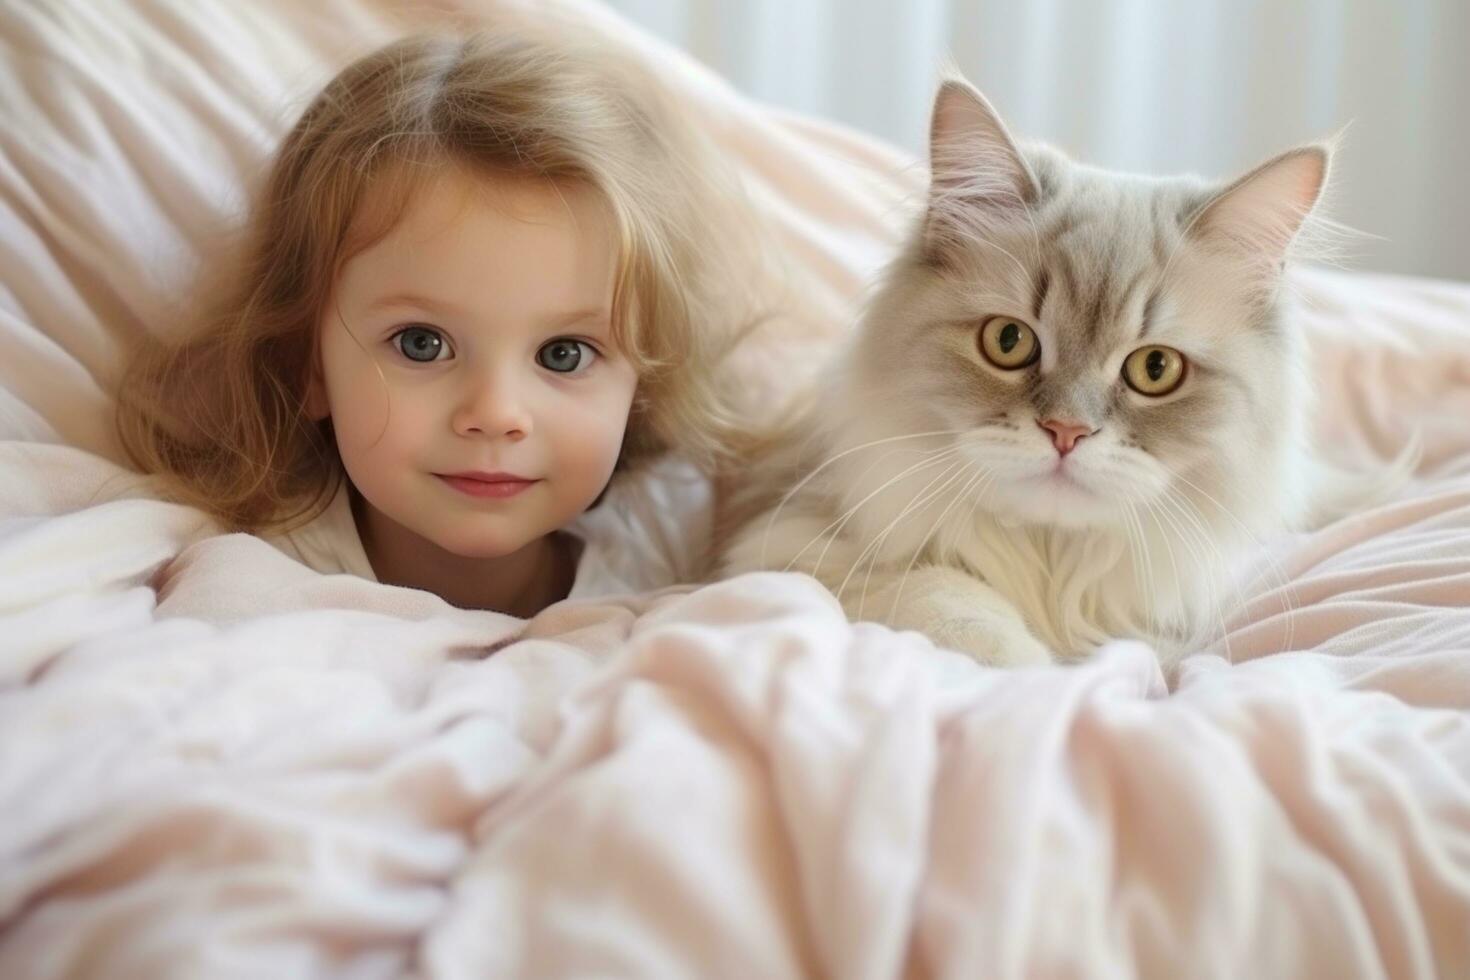 Baby und Kätzchen spielen mit Katze auf das Decke foto